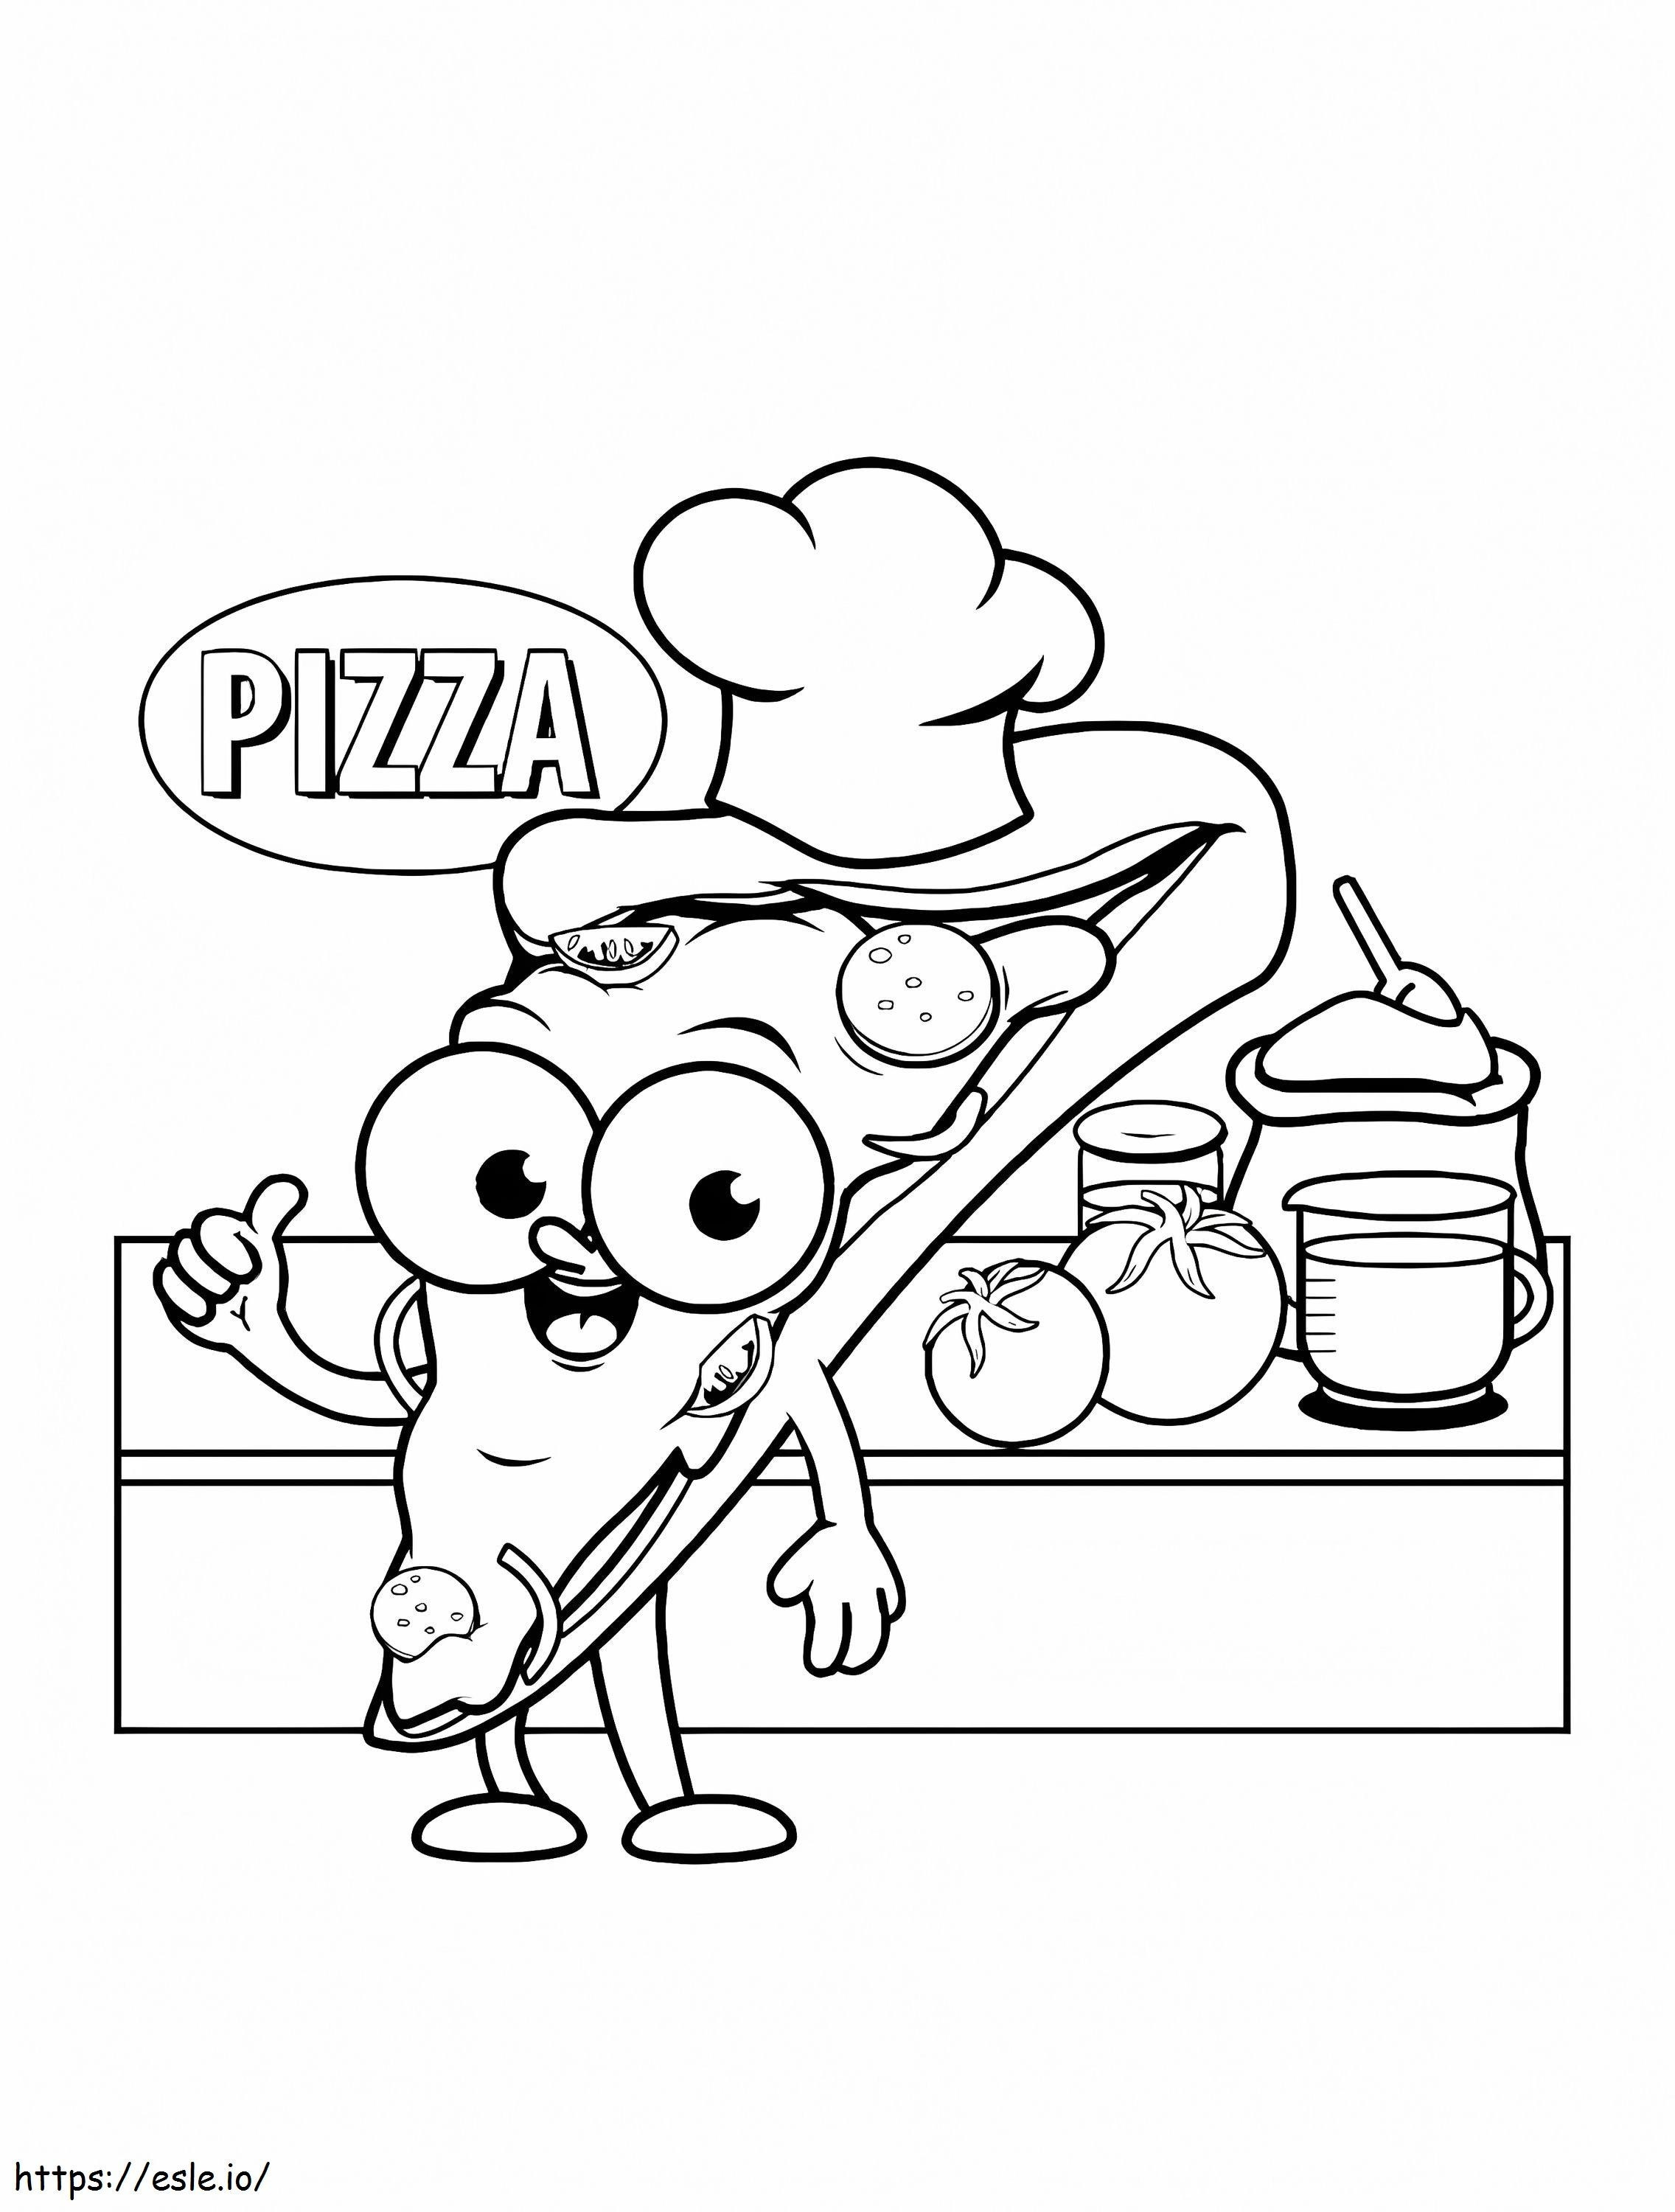 Koki Pizza Di Dapur Gambar Mewarnai